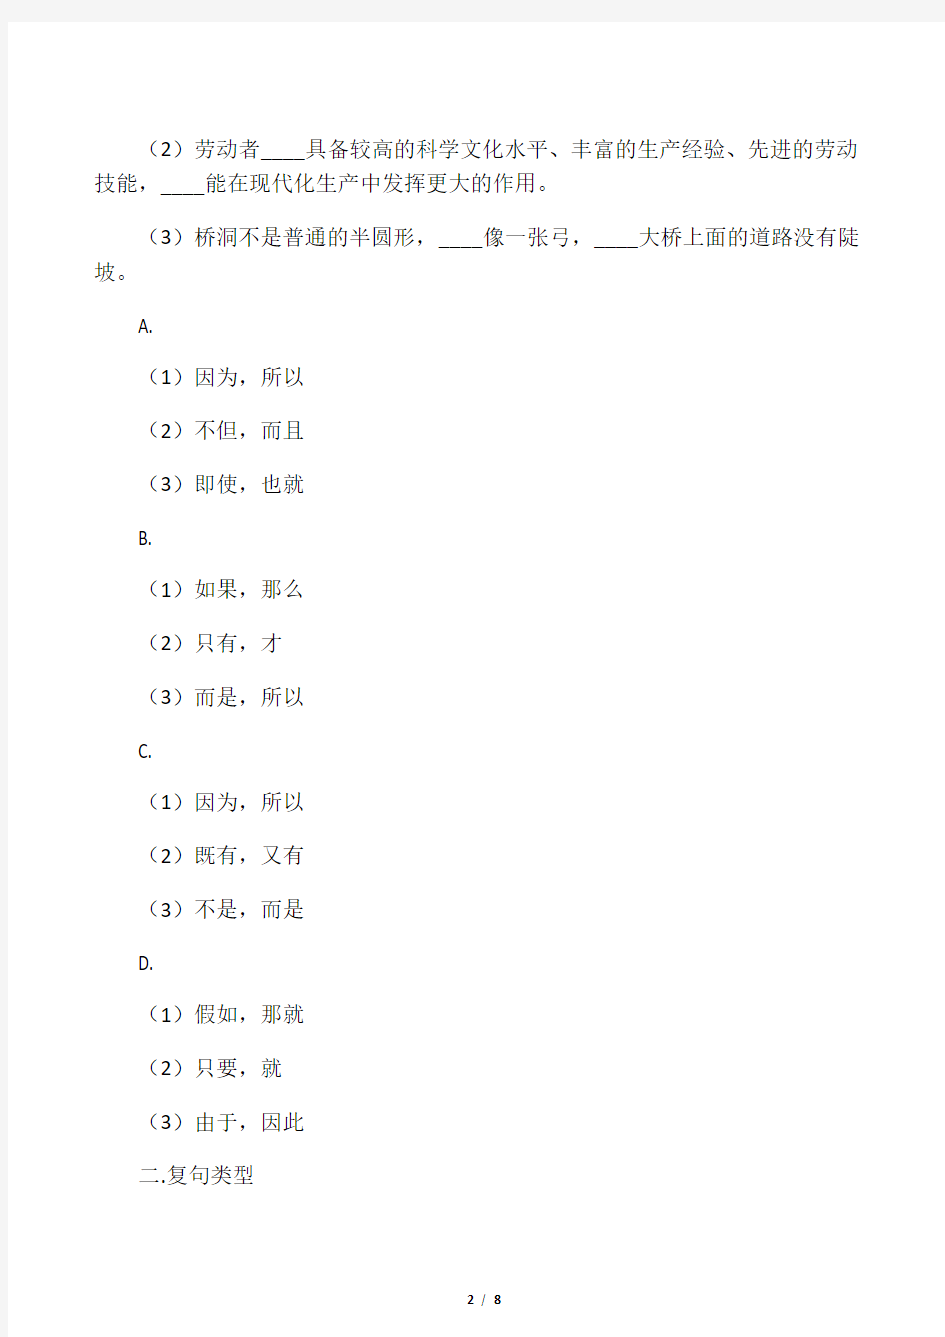 现代汉语复句练习题